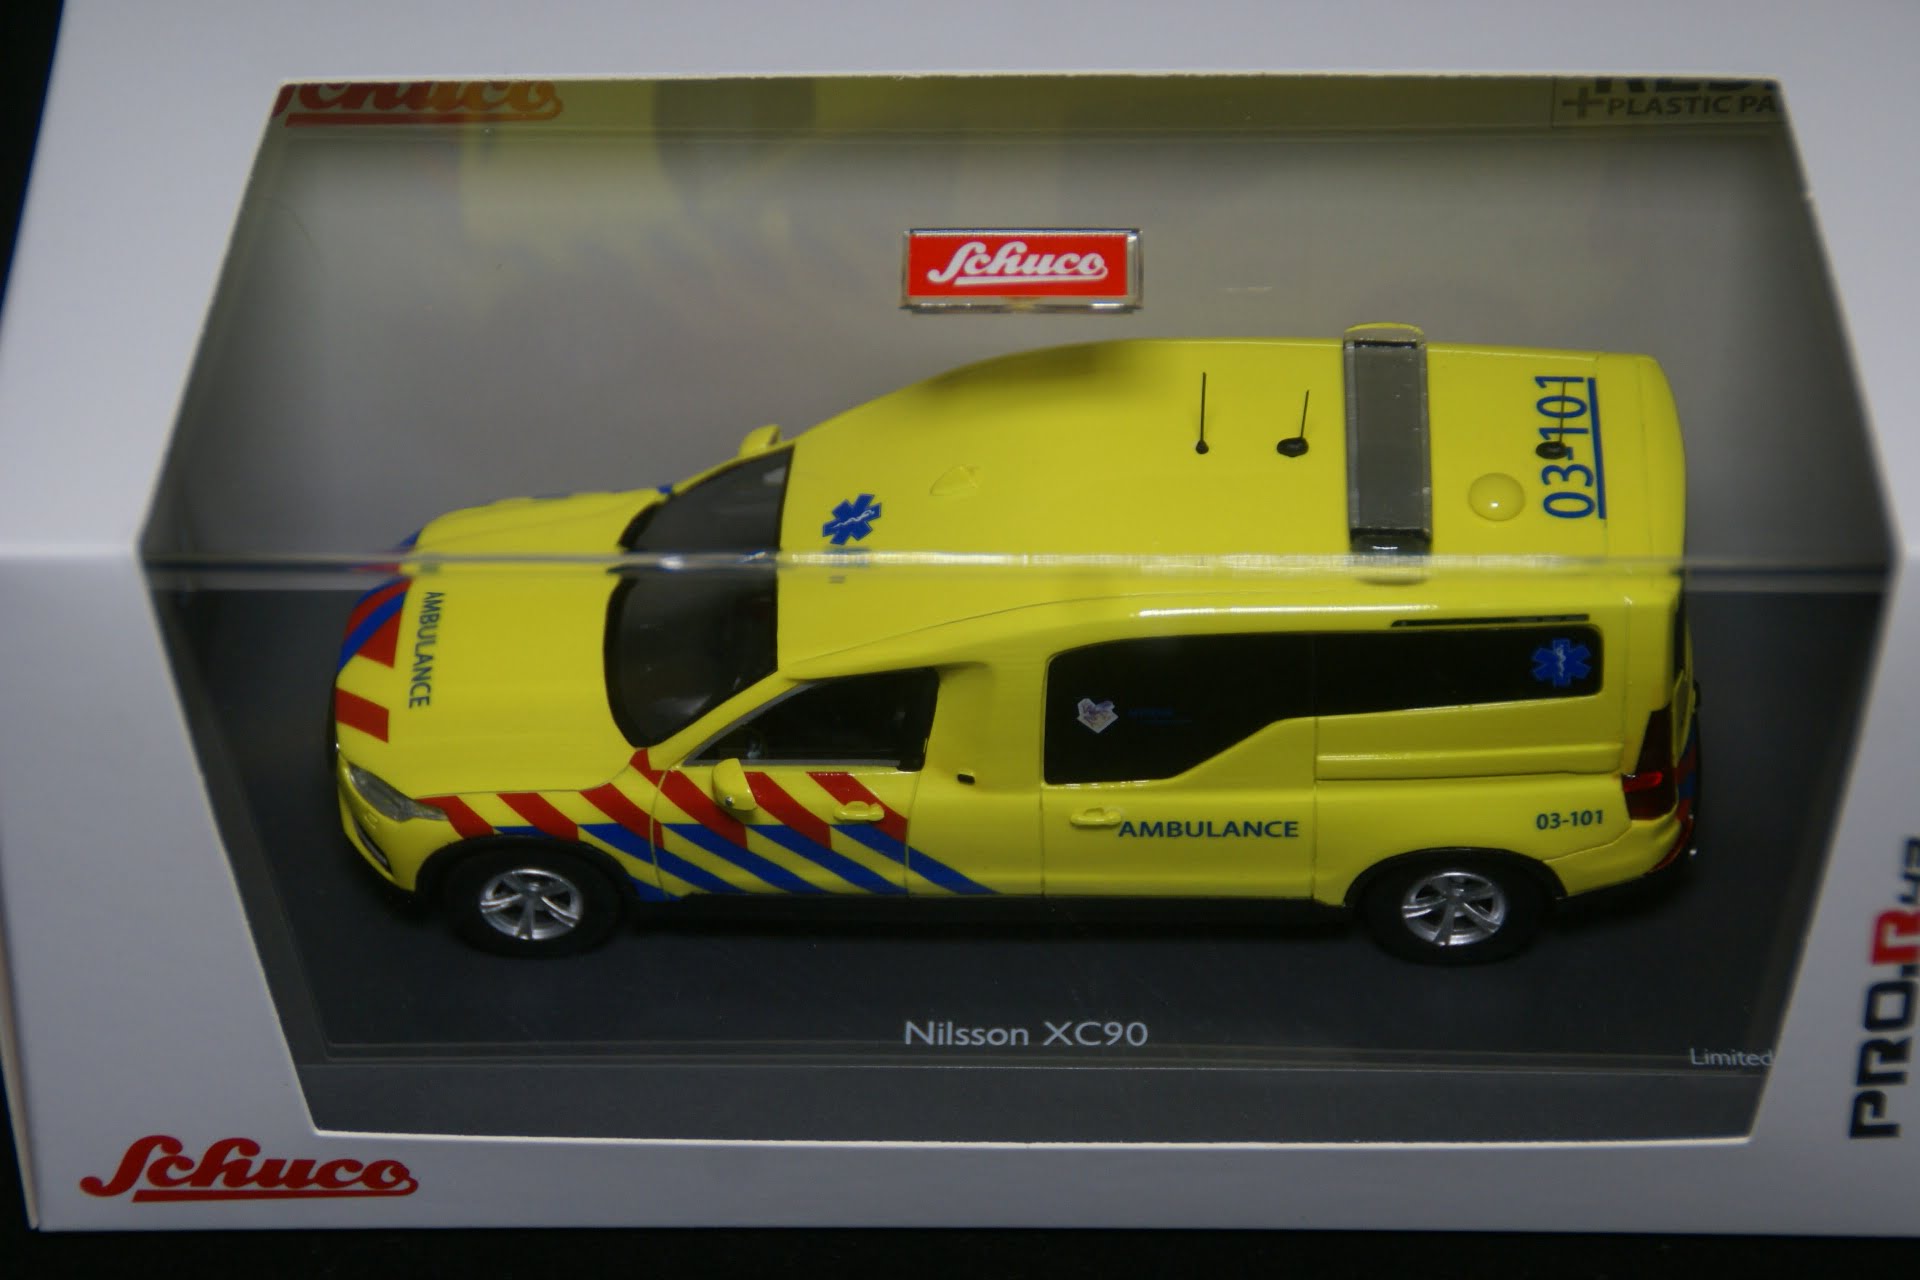 Geest Koel Vermomd miniatuur Schuco Volvo XC90 ambulance > Zwedenparts.com